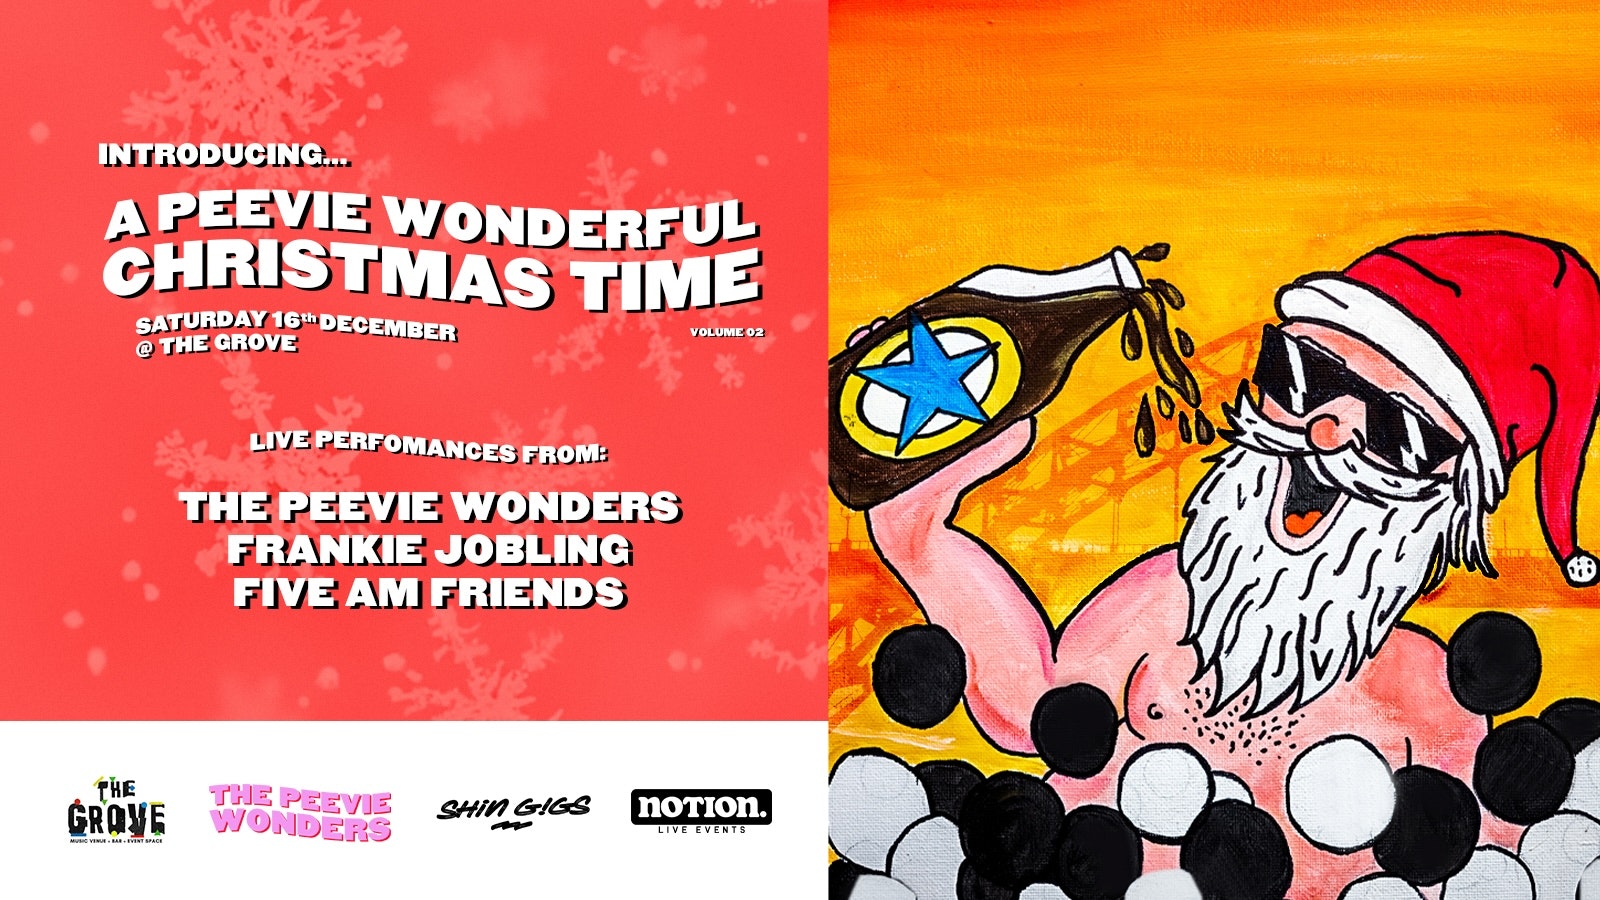 A Peevie Wonderful Christmas Time ft. The Peevie Wonders, Frankie Jobling & Five AM Friends